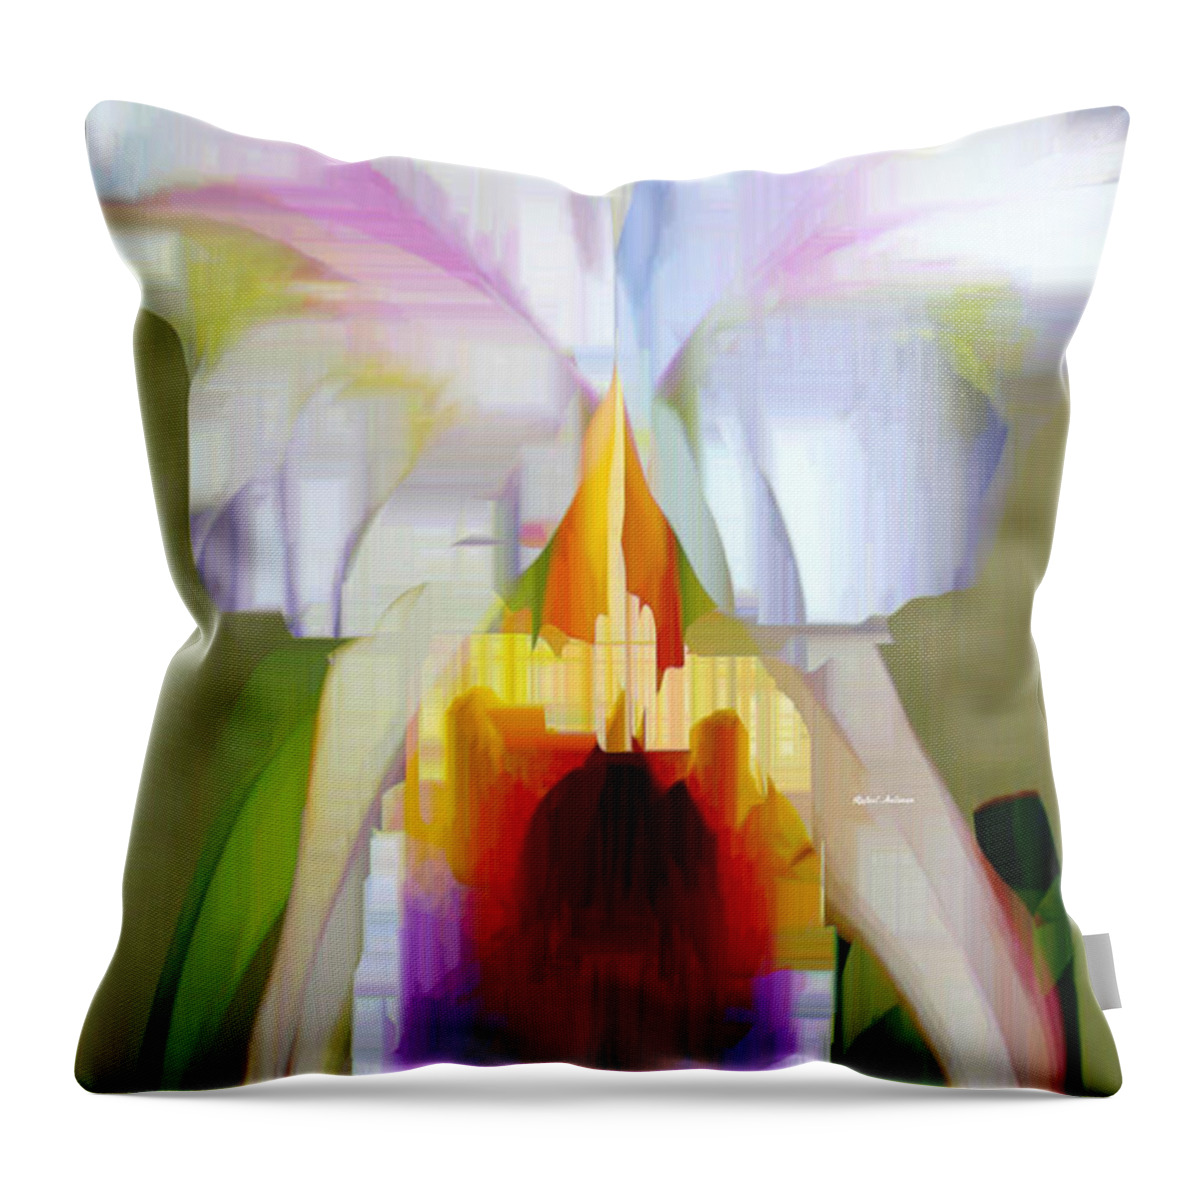 Art Throw Pillow featuring the digital art Orchid Cattleya by Rafael Salazar